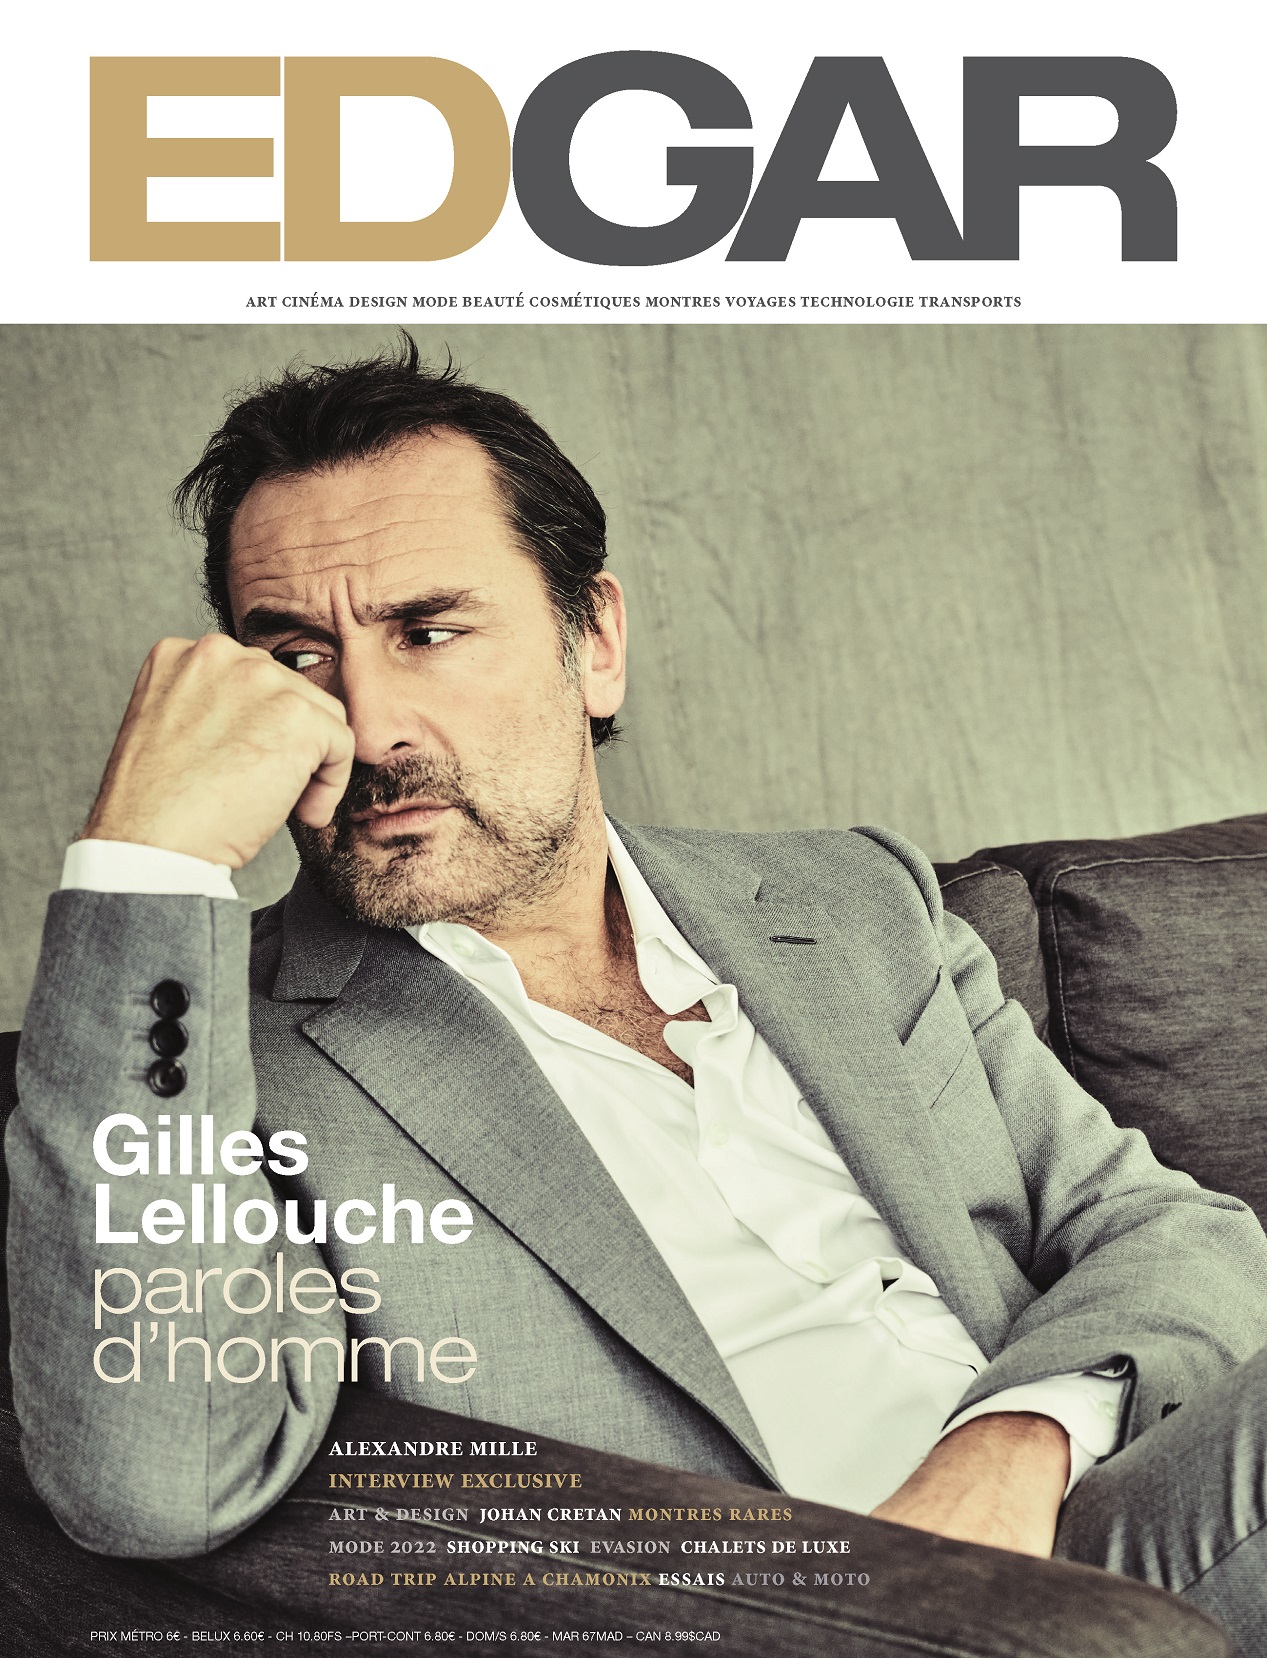 Gilles Lellouche en couverture du magazine EDGAR